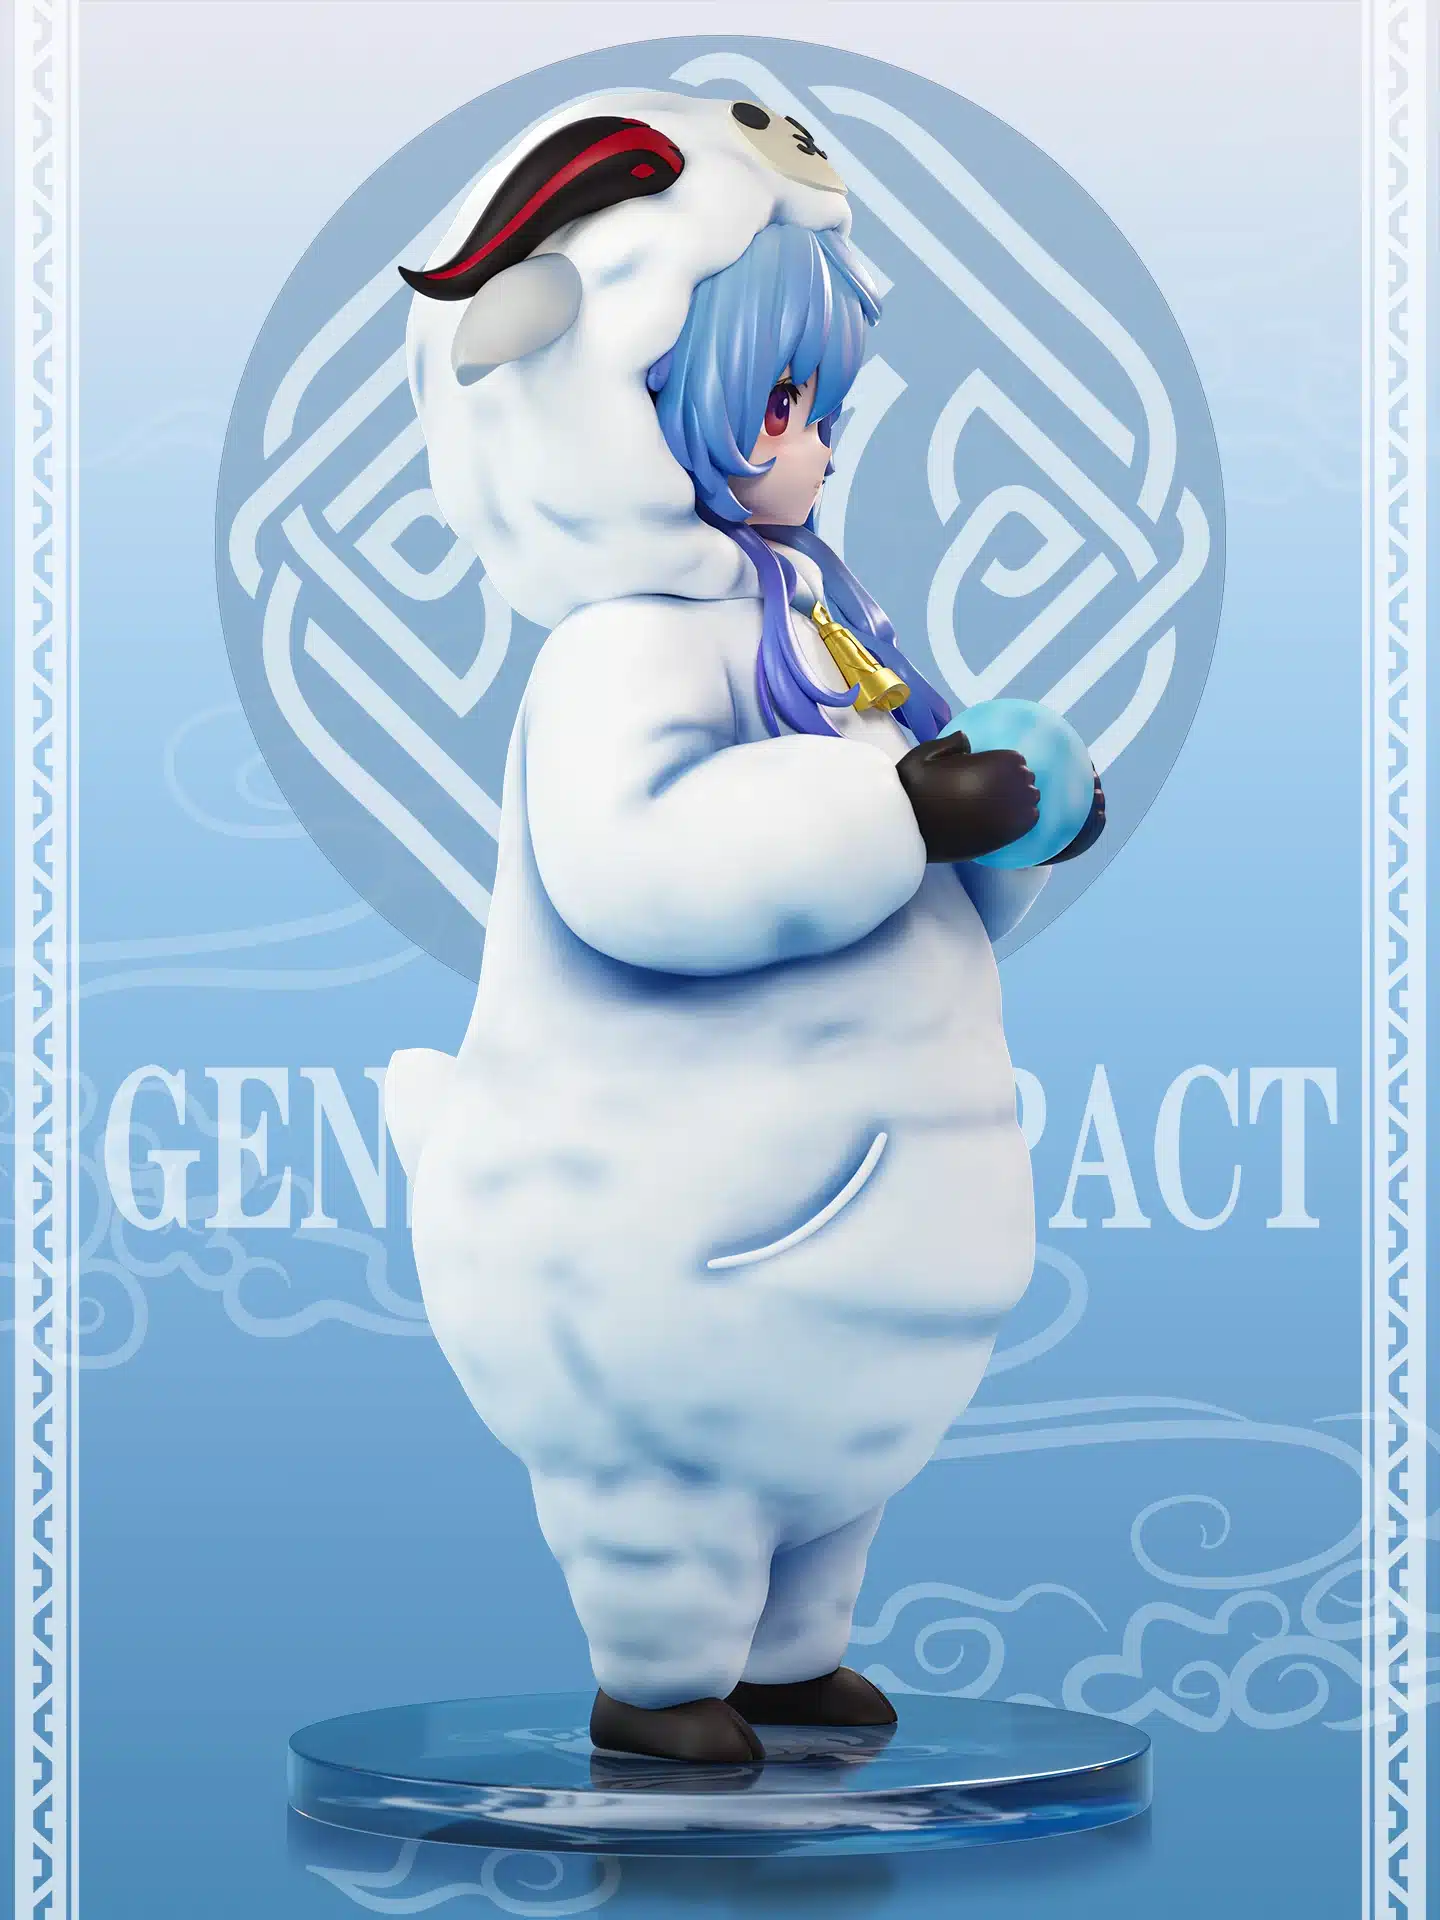 Genshin Impact: Ganyu Se Convierte En La Legendaria “Cococabra” En Fascinante Figura